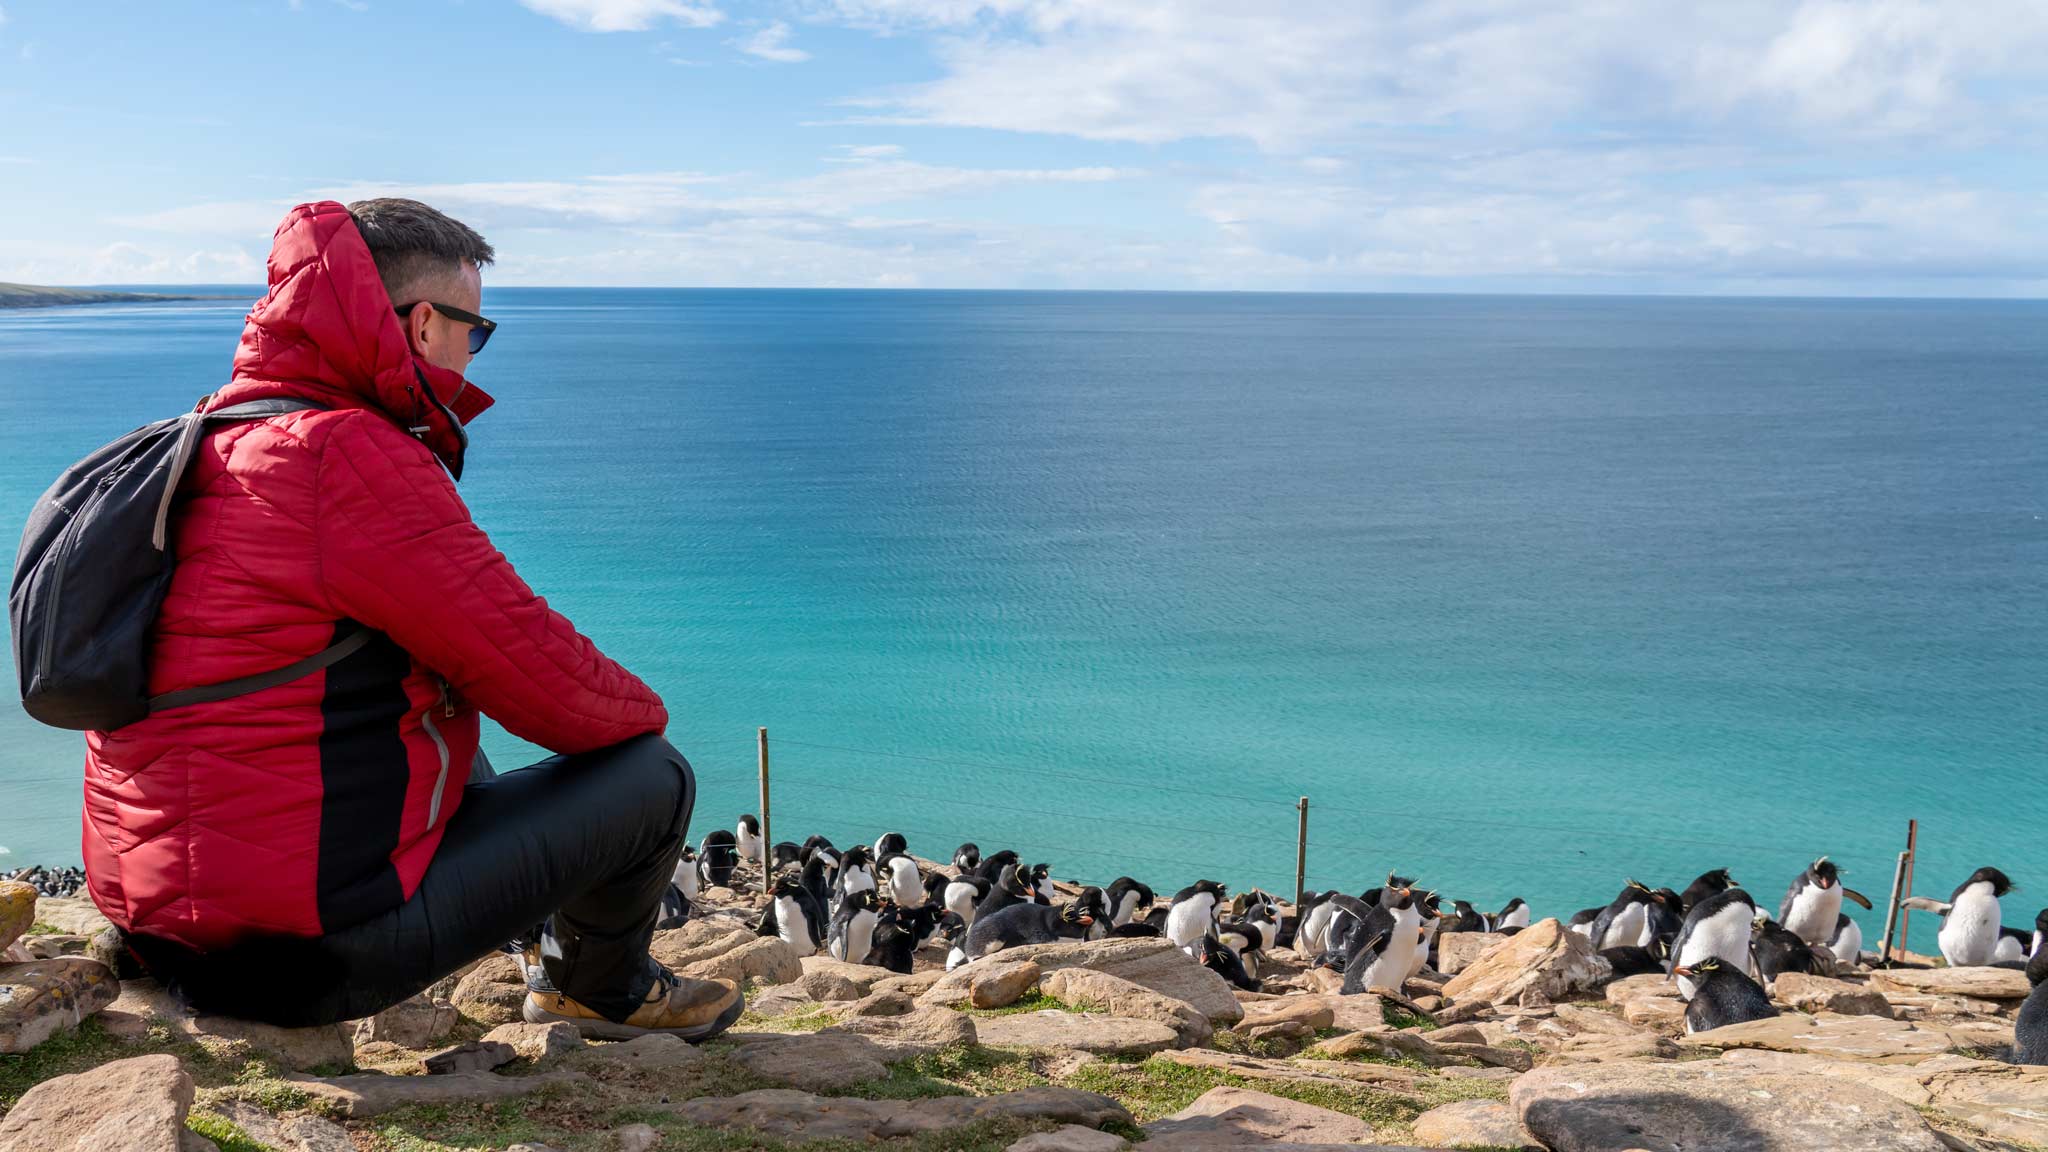 Dan está sentado com um casaco vermelho à esquerda, com as águas azuis claras em vários tons além dele.  Um grupo de pinguins saltitantes está pontilhado nas rochas à direita.